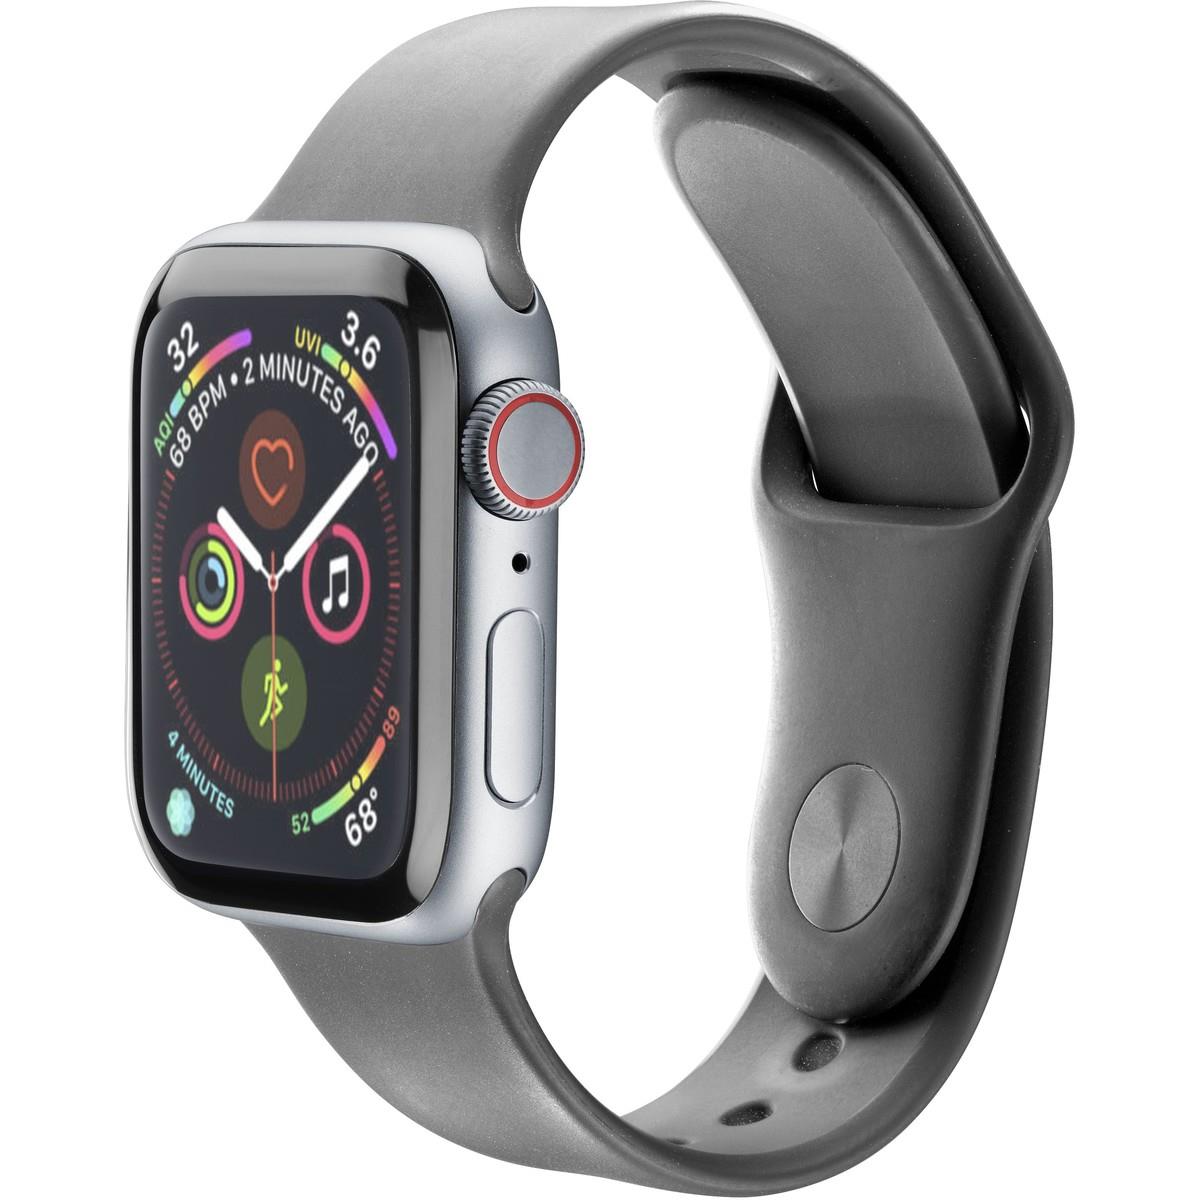 Schutzglas TIME für Apple Watch 40mm